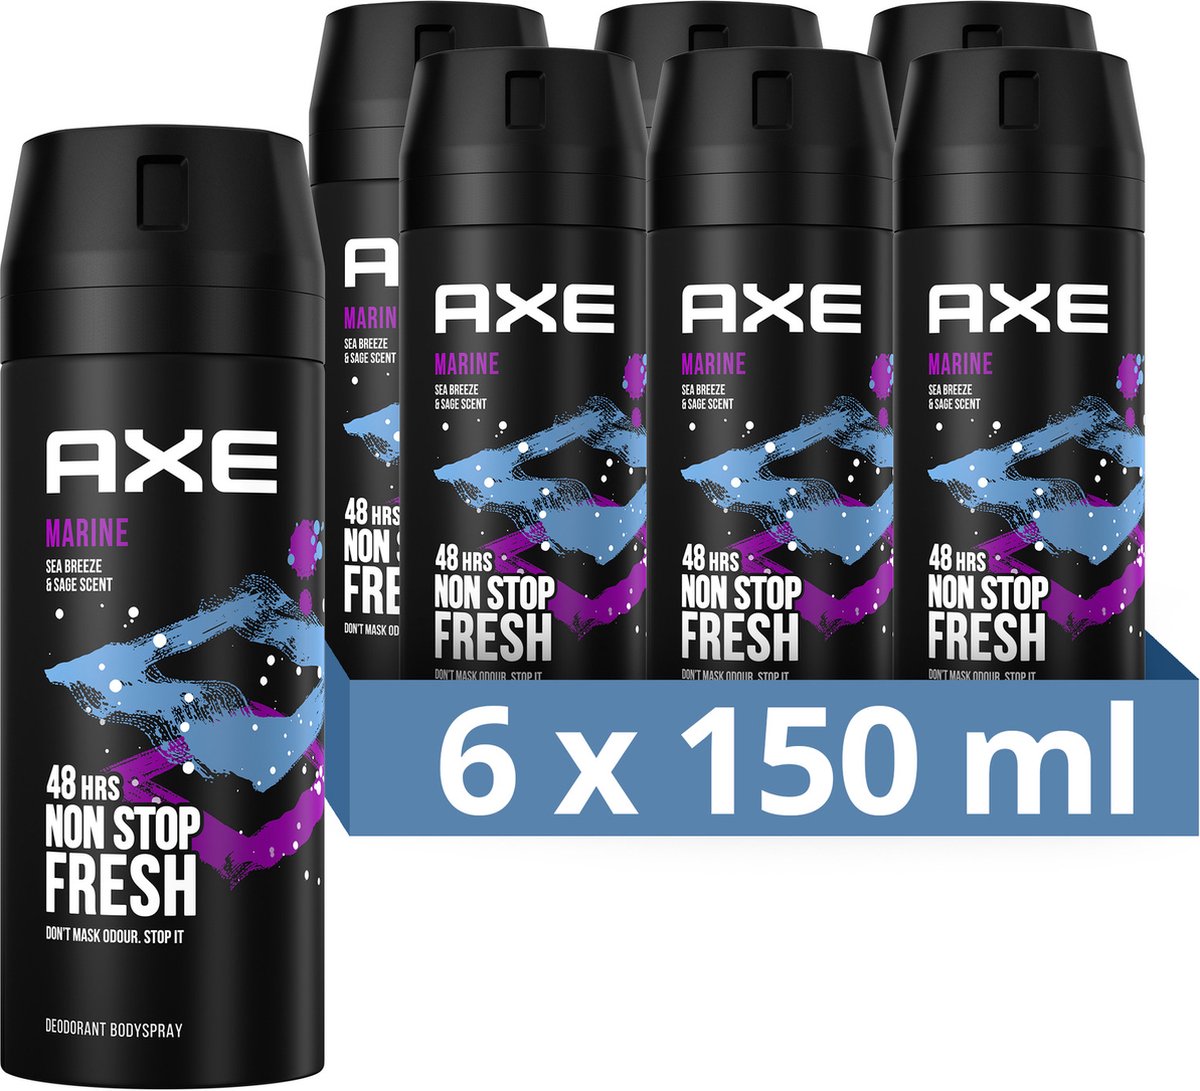 AXE Marine Deodorant Bodyspray - 6 x 150 ml - Voordeelverpakking | bol.com